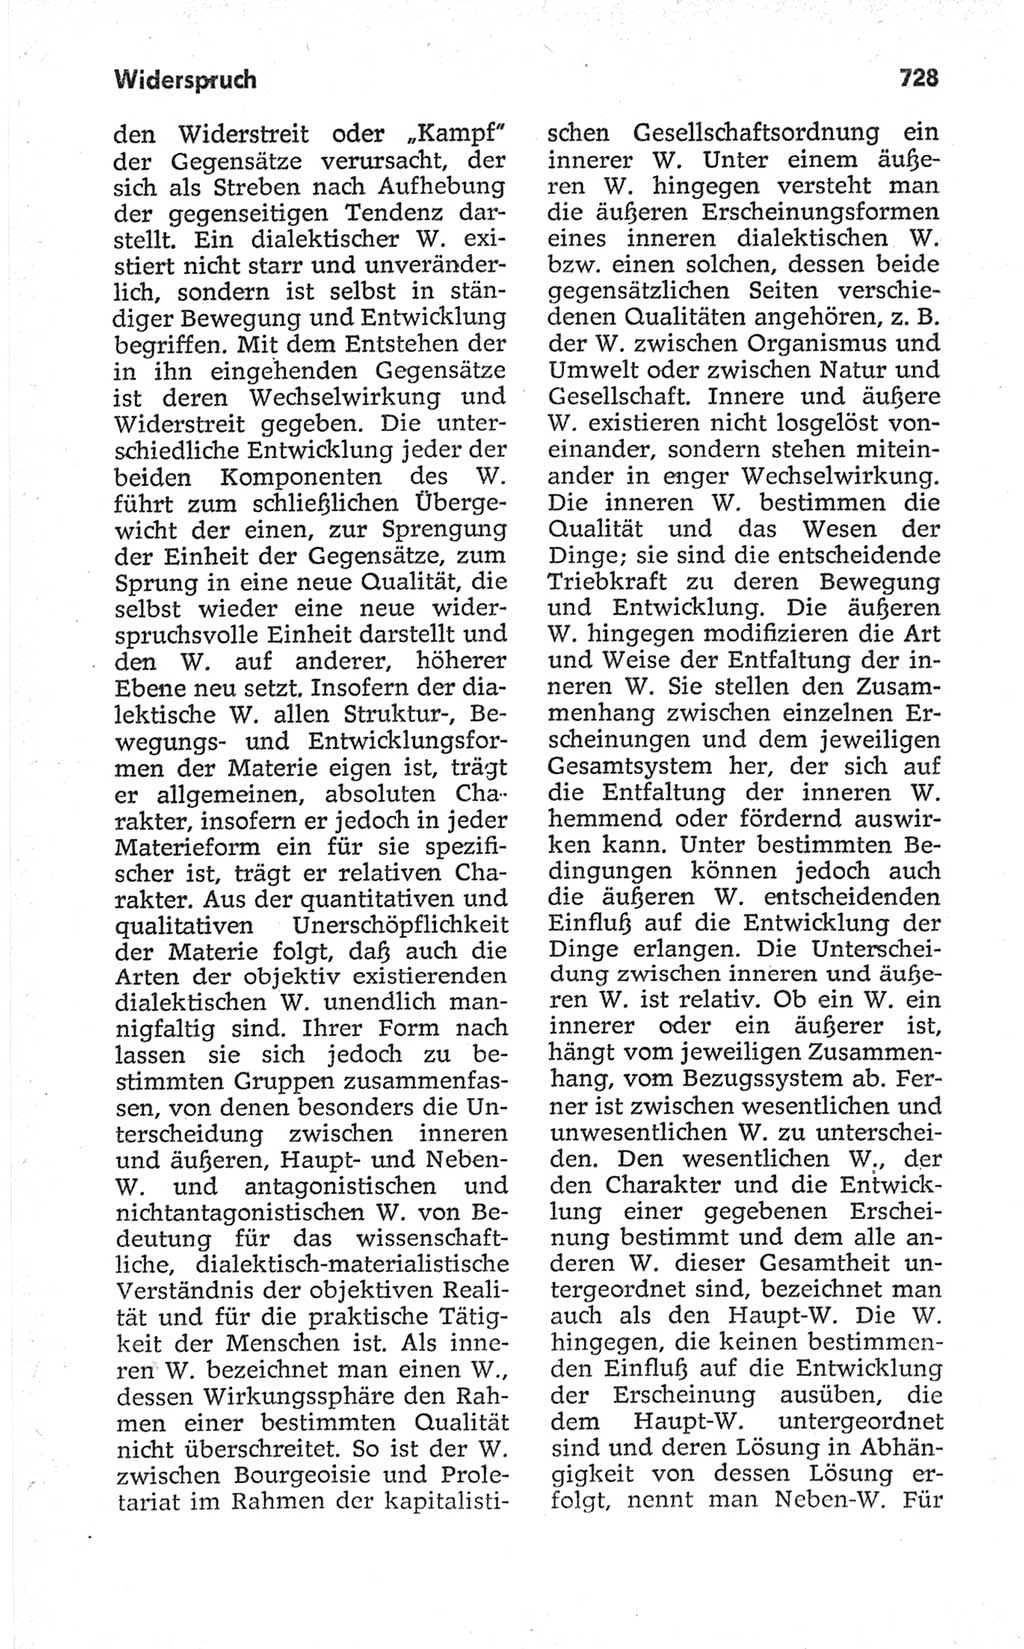 Kleines politisches Wörterbuch [Deutsche Demokratische Republik (DDR)] 1967, Seite 728 (Kl. pol. Wb. DDR 1967, S. 728)